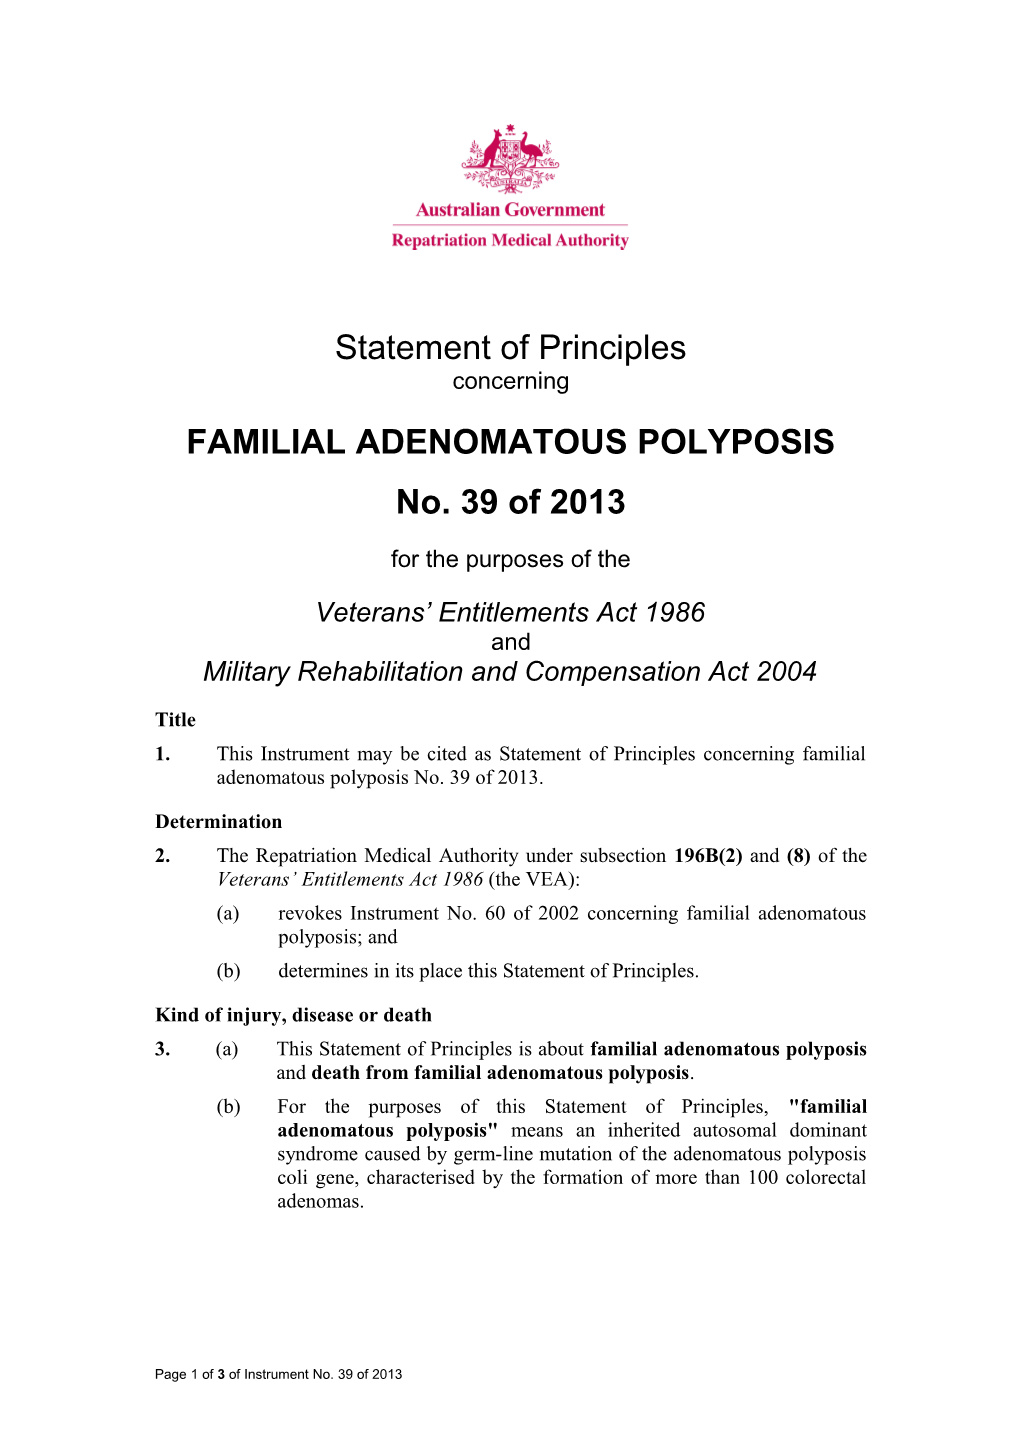 Familial Adenomatous Polyposis